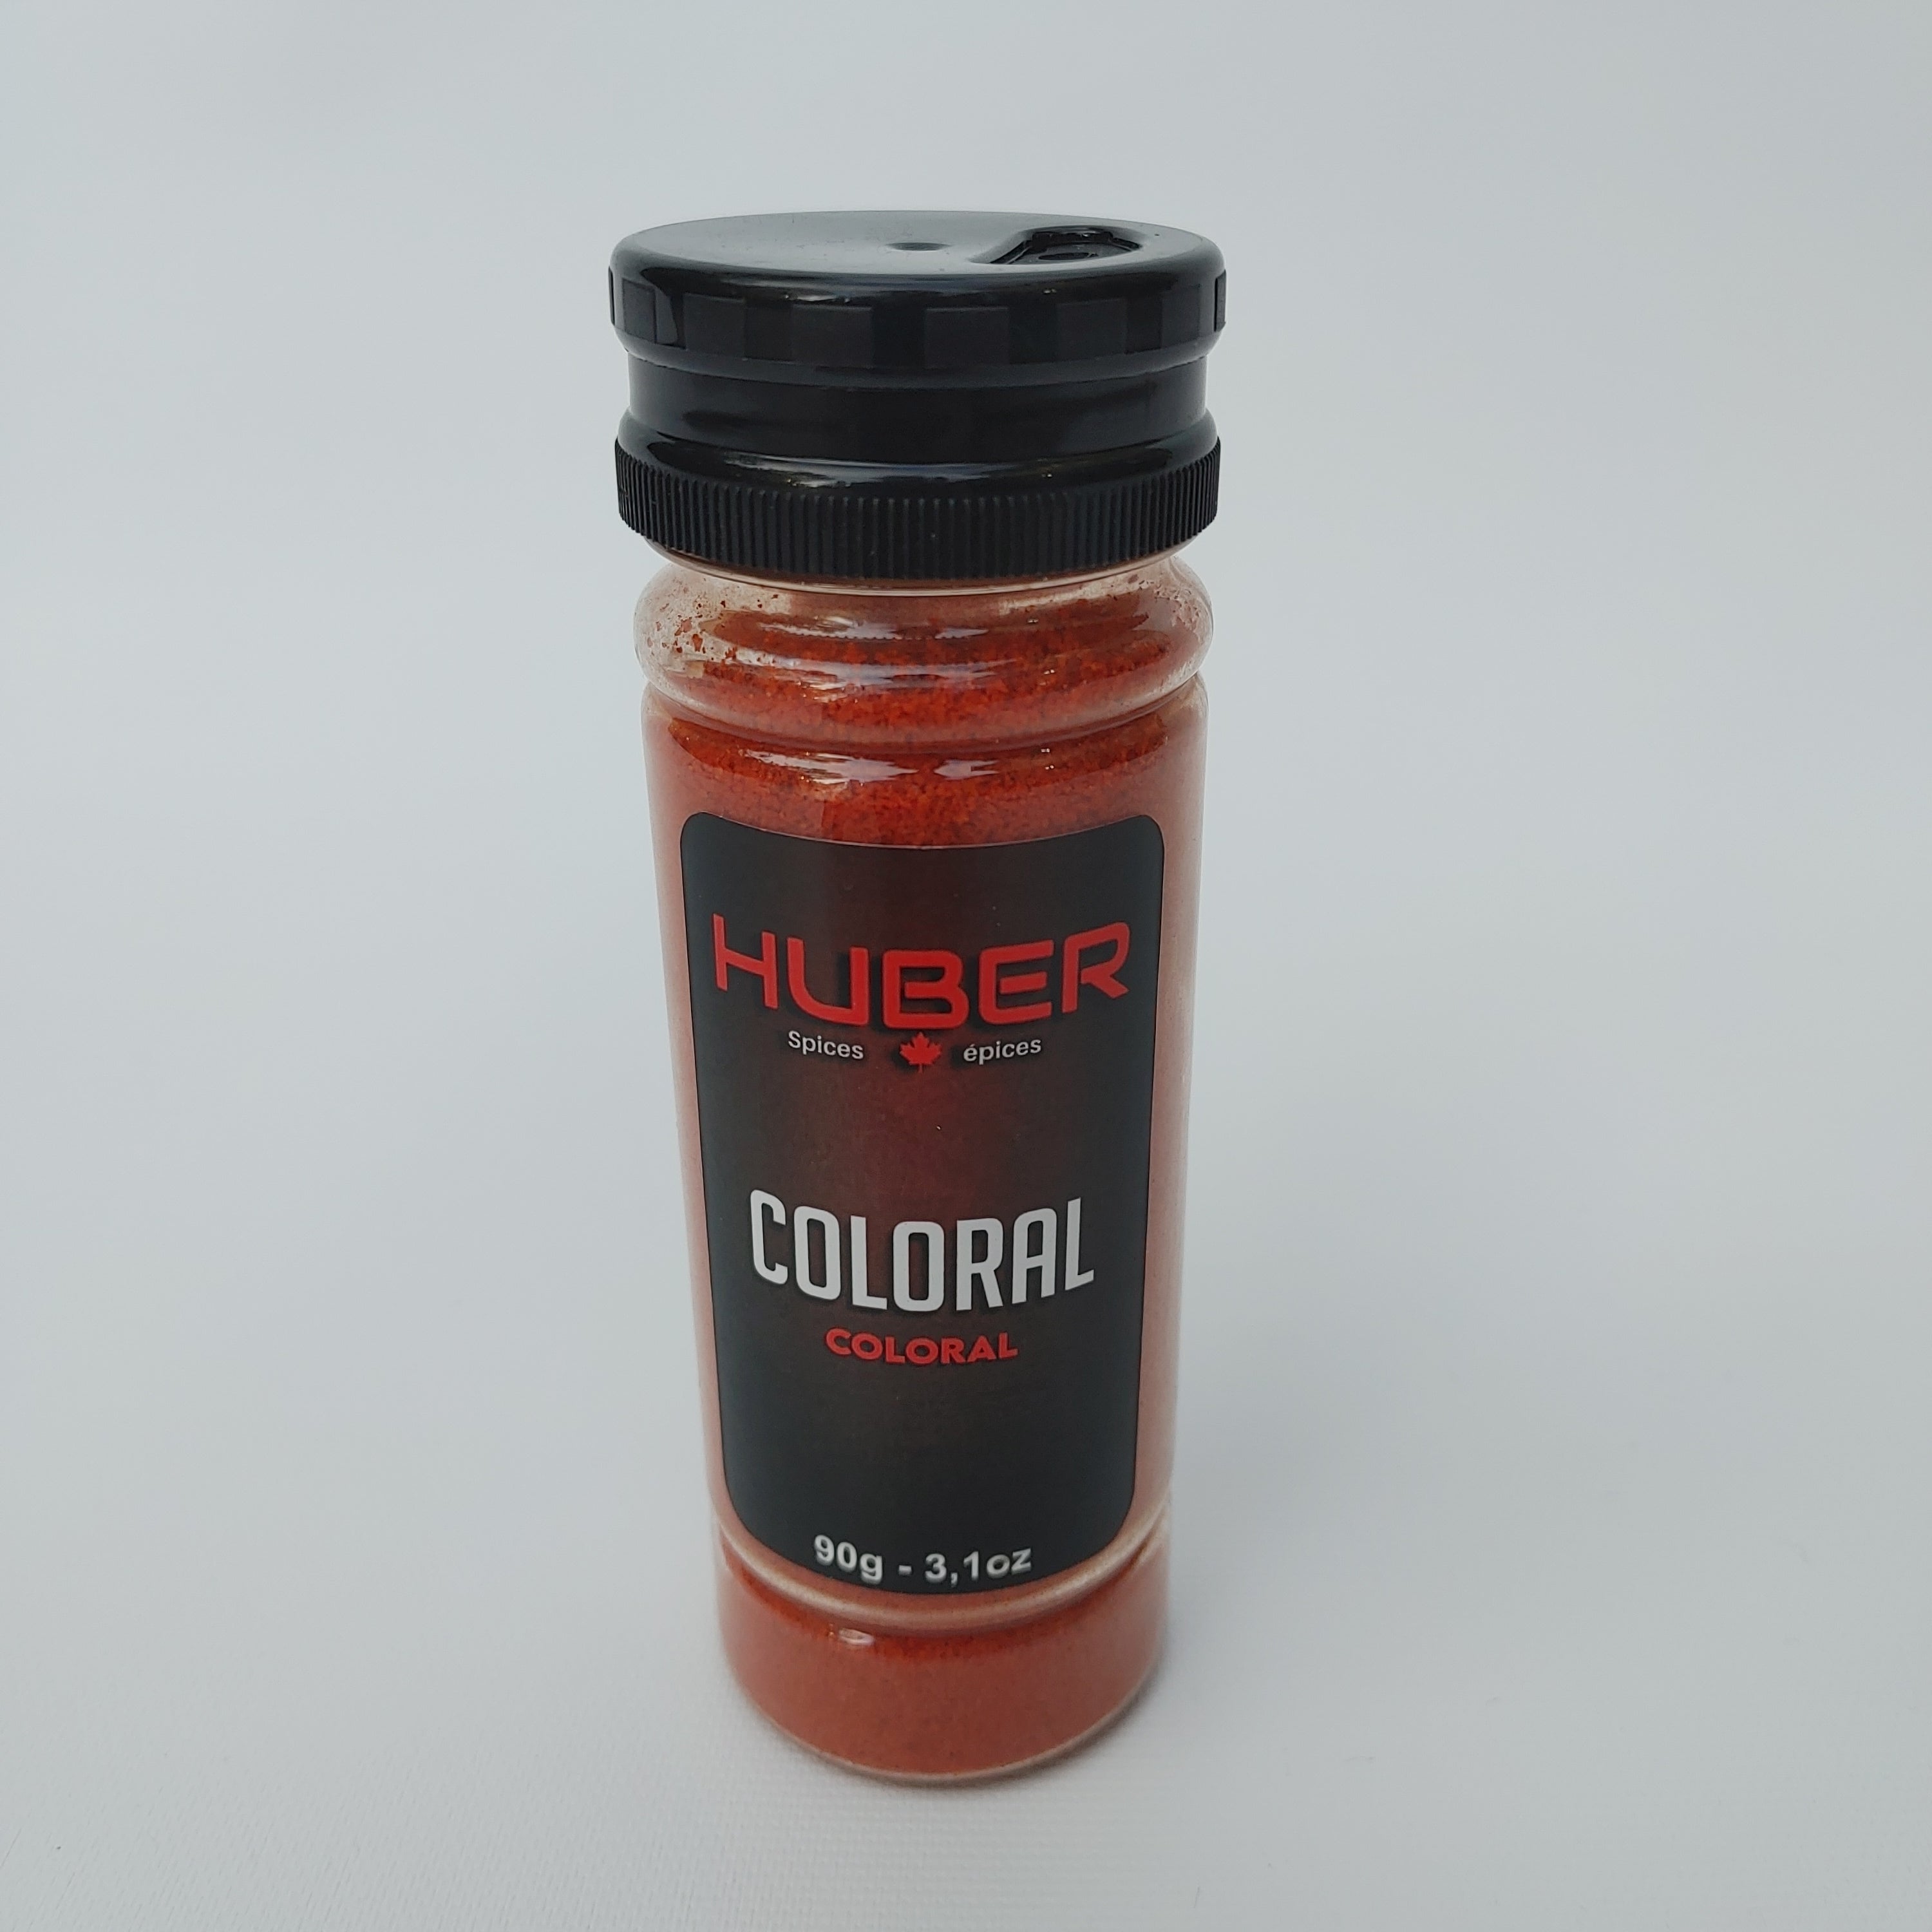 HUBER - Coloris